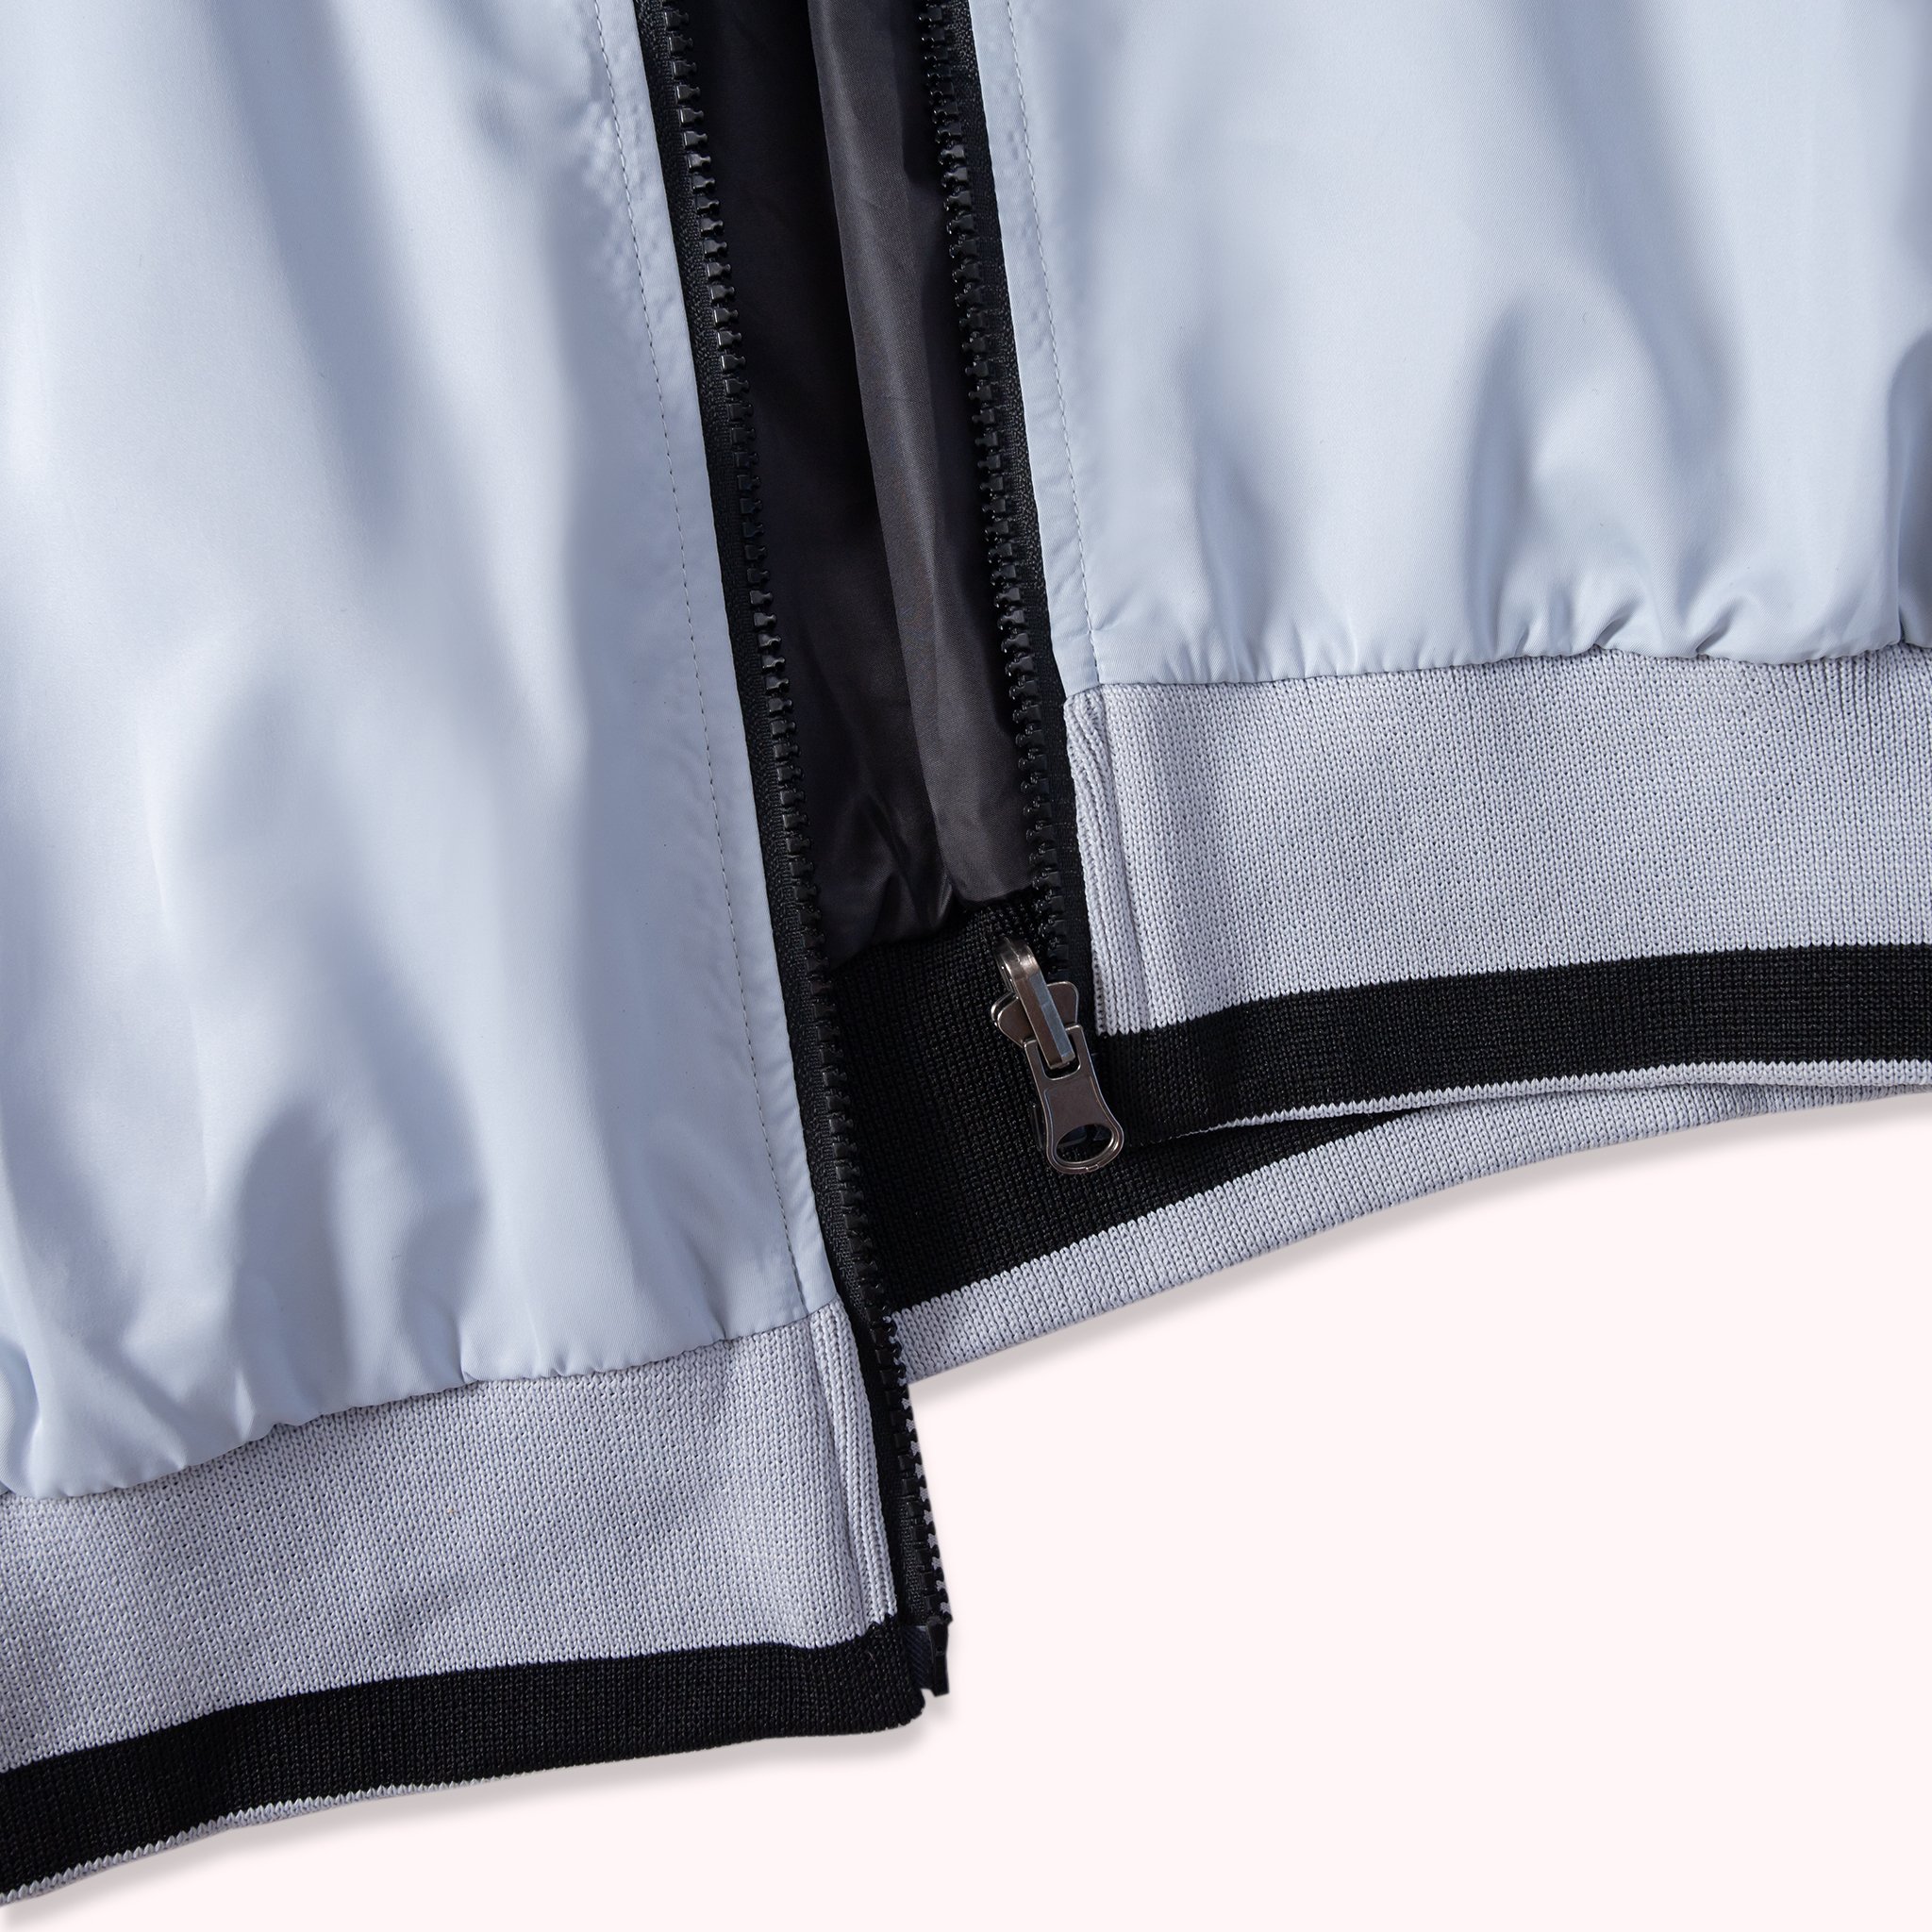 Áo khoác dù 2 mặt 2 lớp chống trượt nước Lados - 2015 form unisex trẻ trung đơn dễ phối